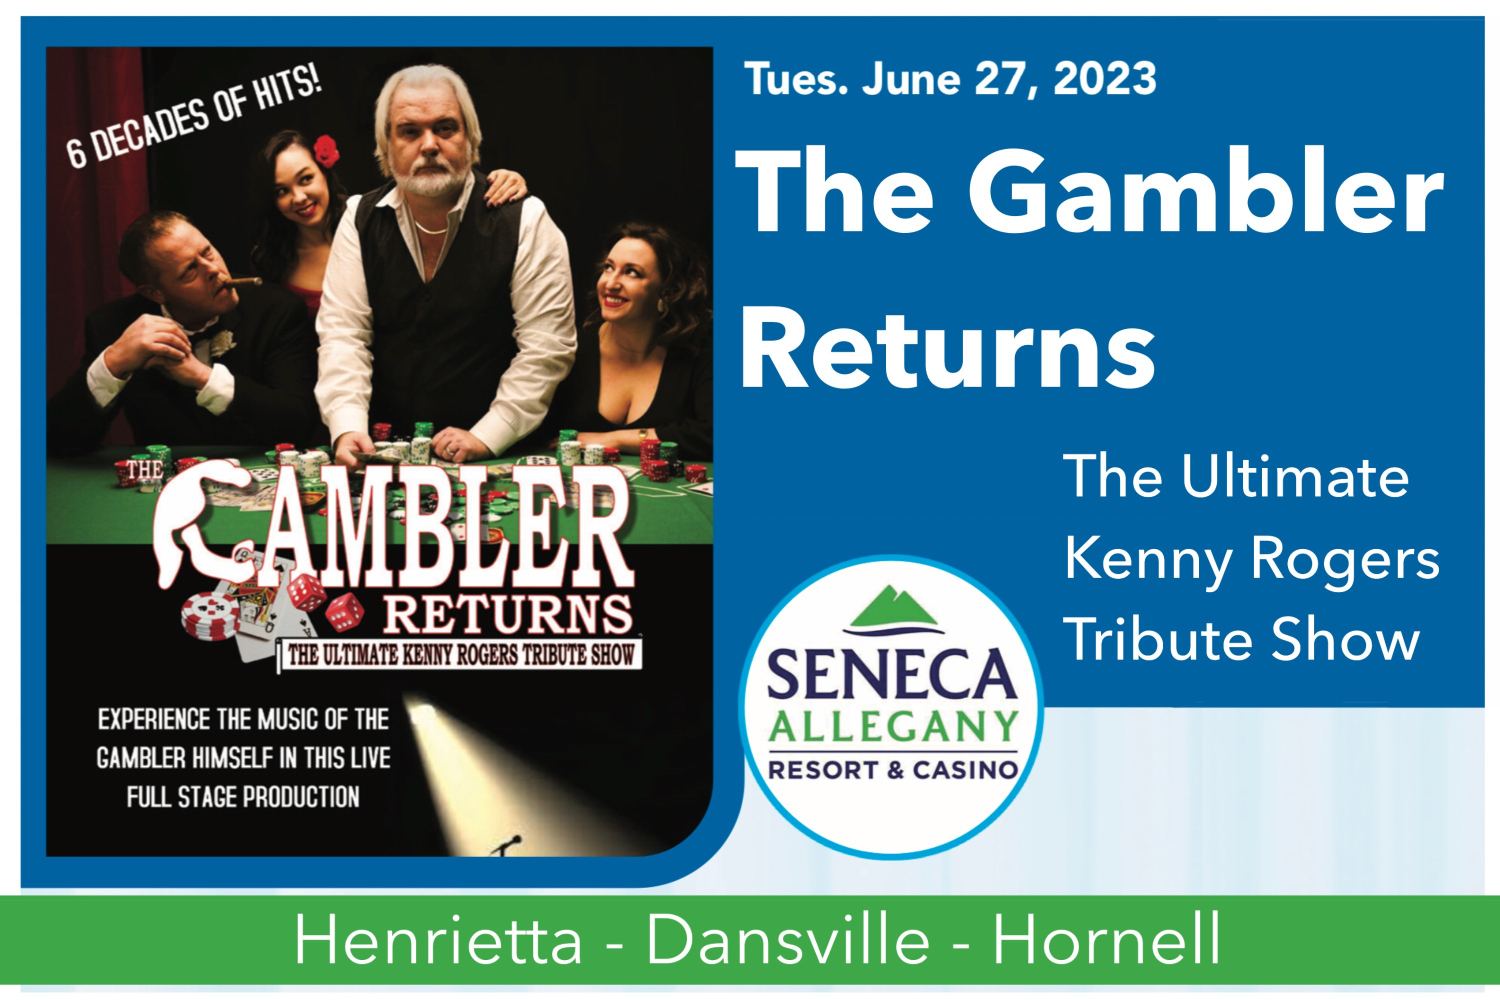 The Gambler Returns at SAC - Tues., June 27, 2023